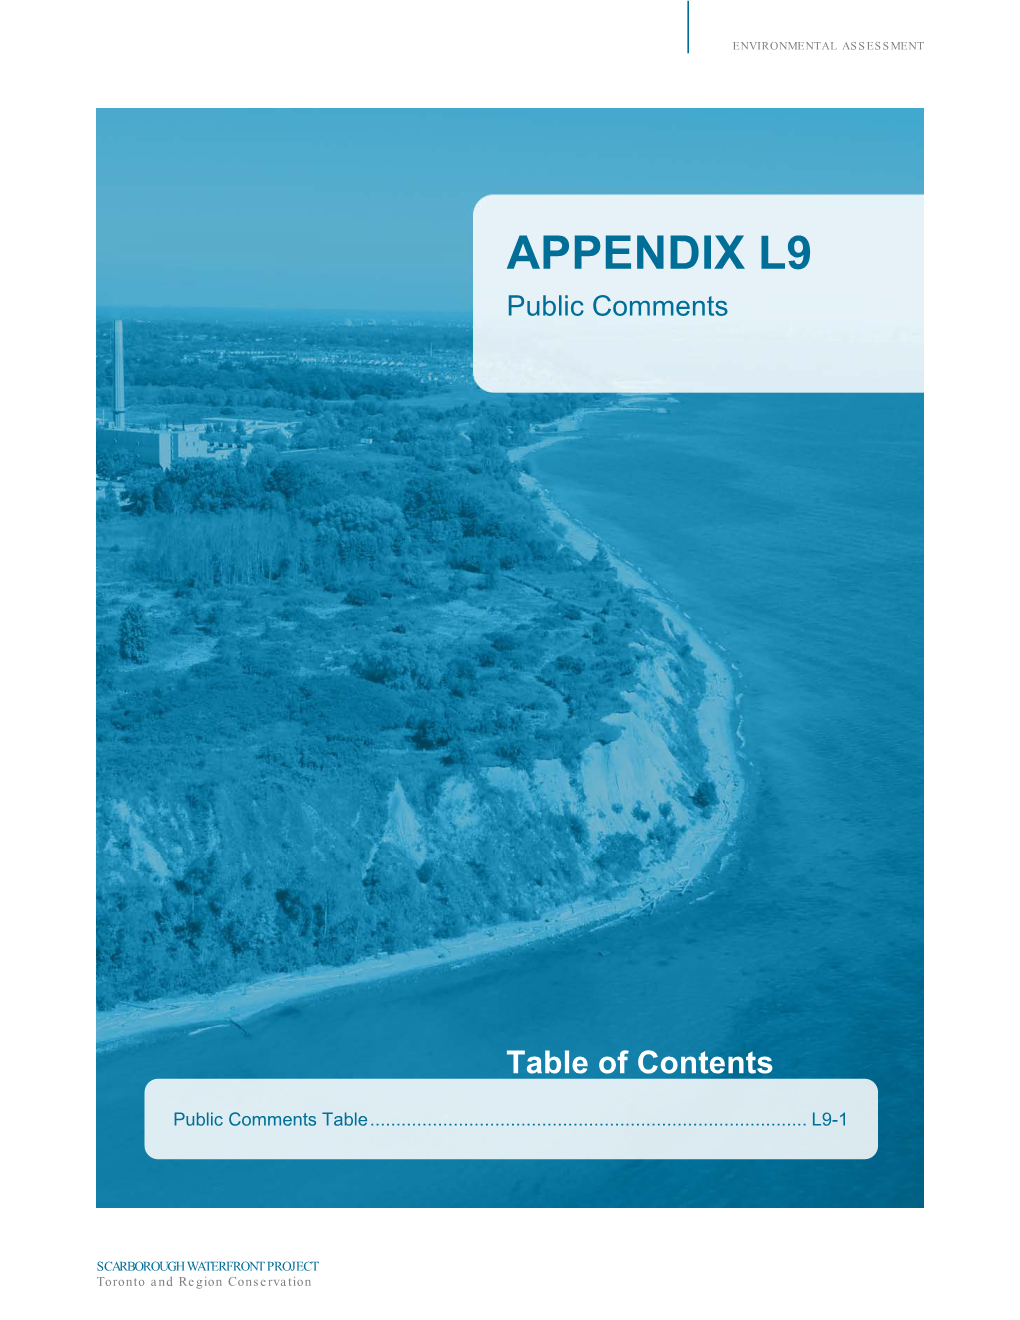 APPENDIX L9 Public Comments